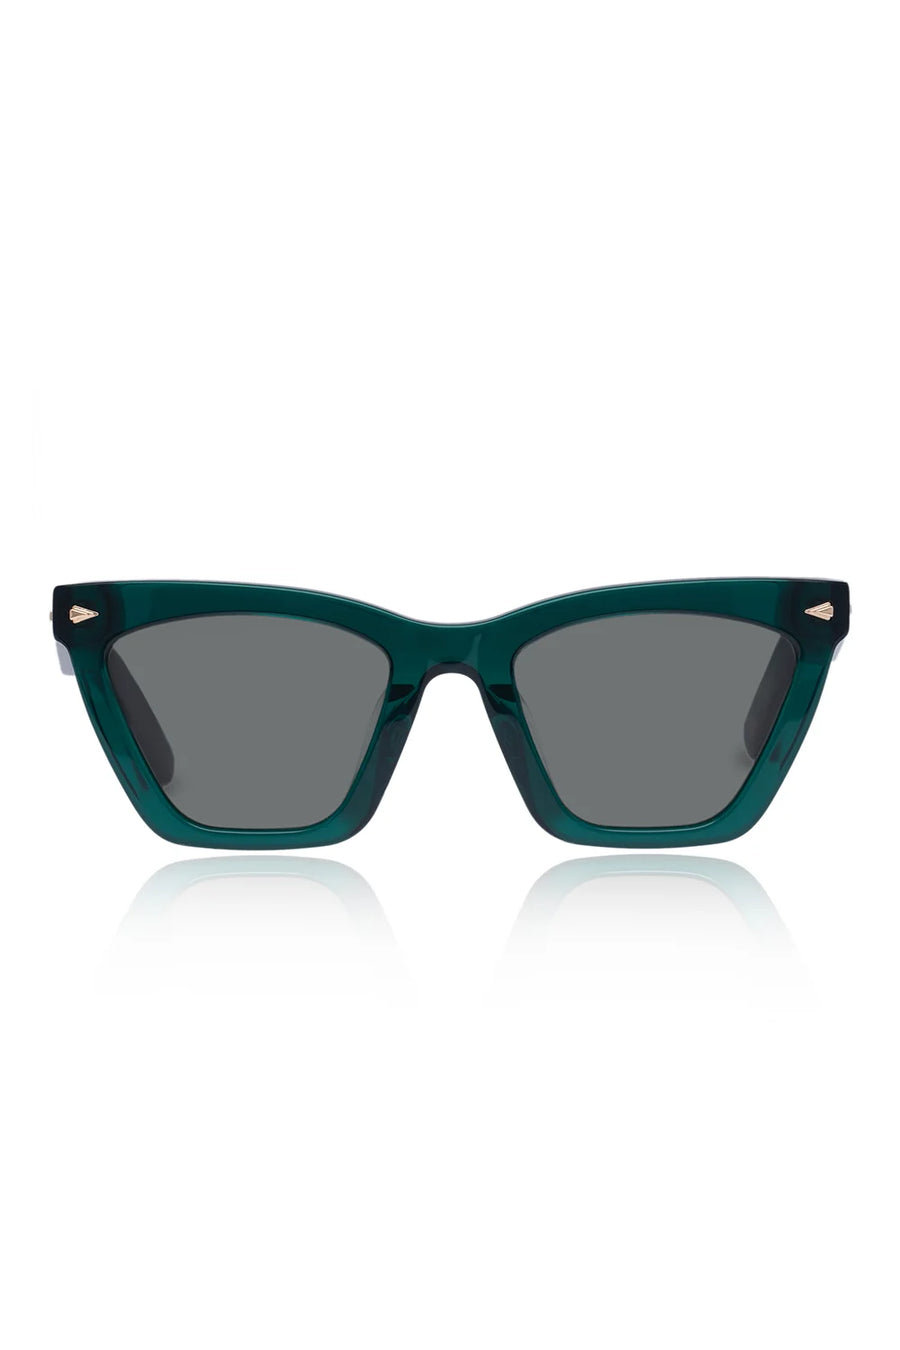 Karen Walker Eyewear | Spellbound - Emerald